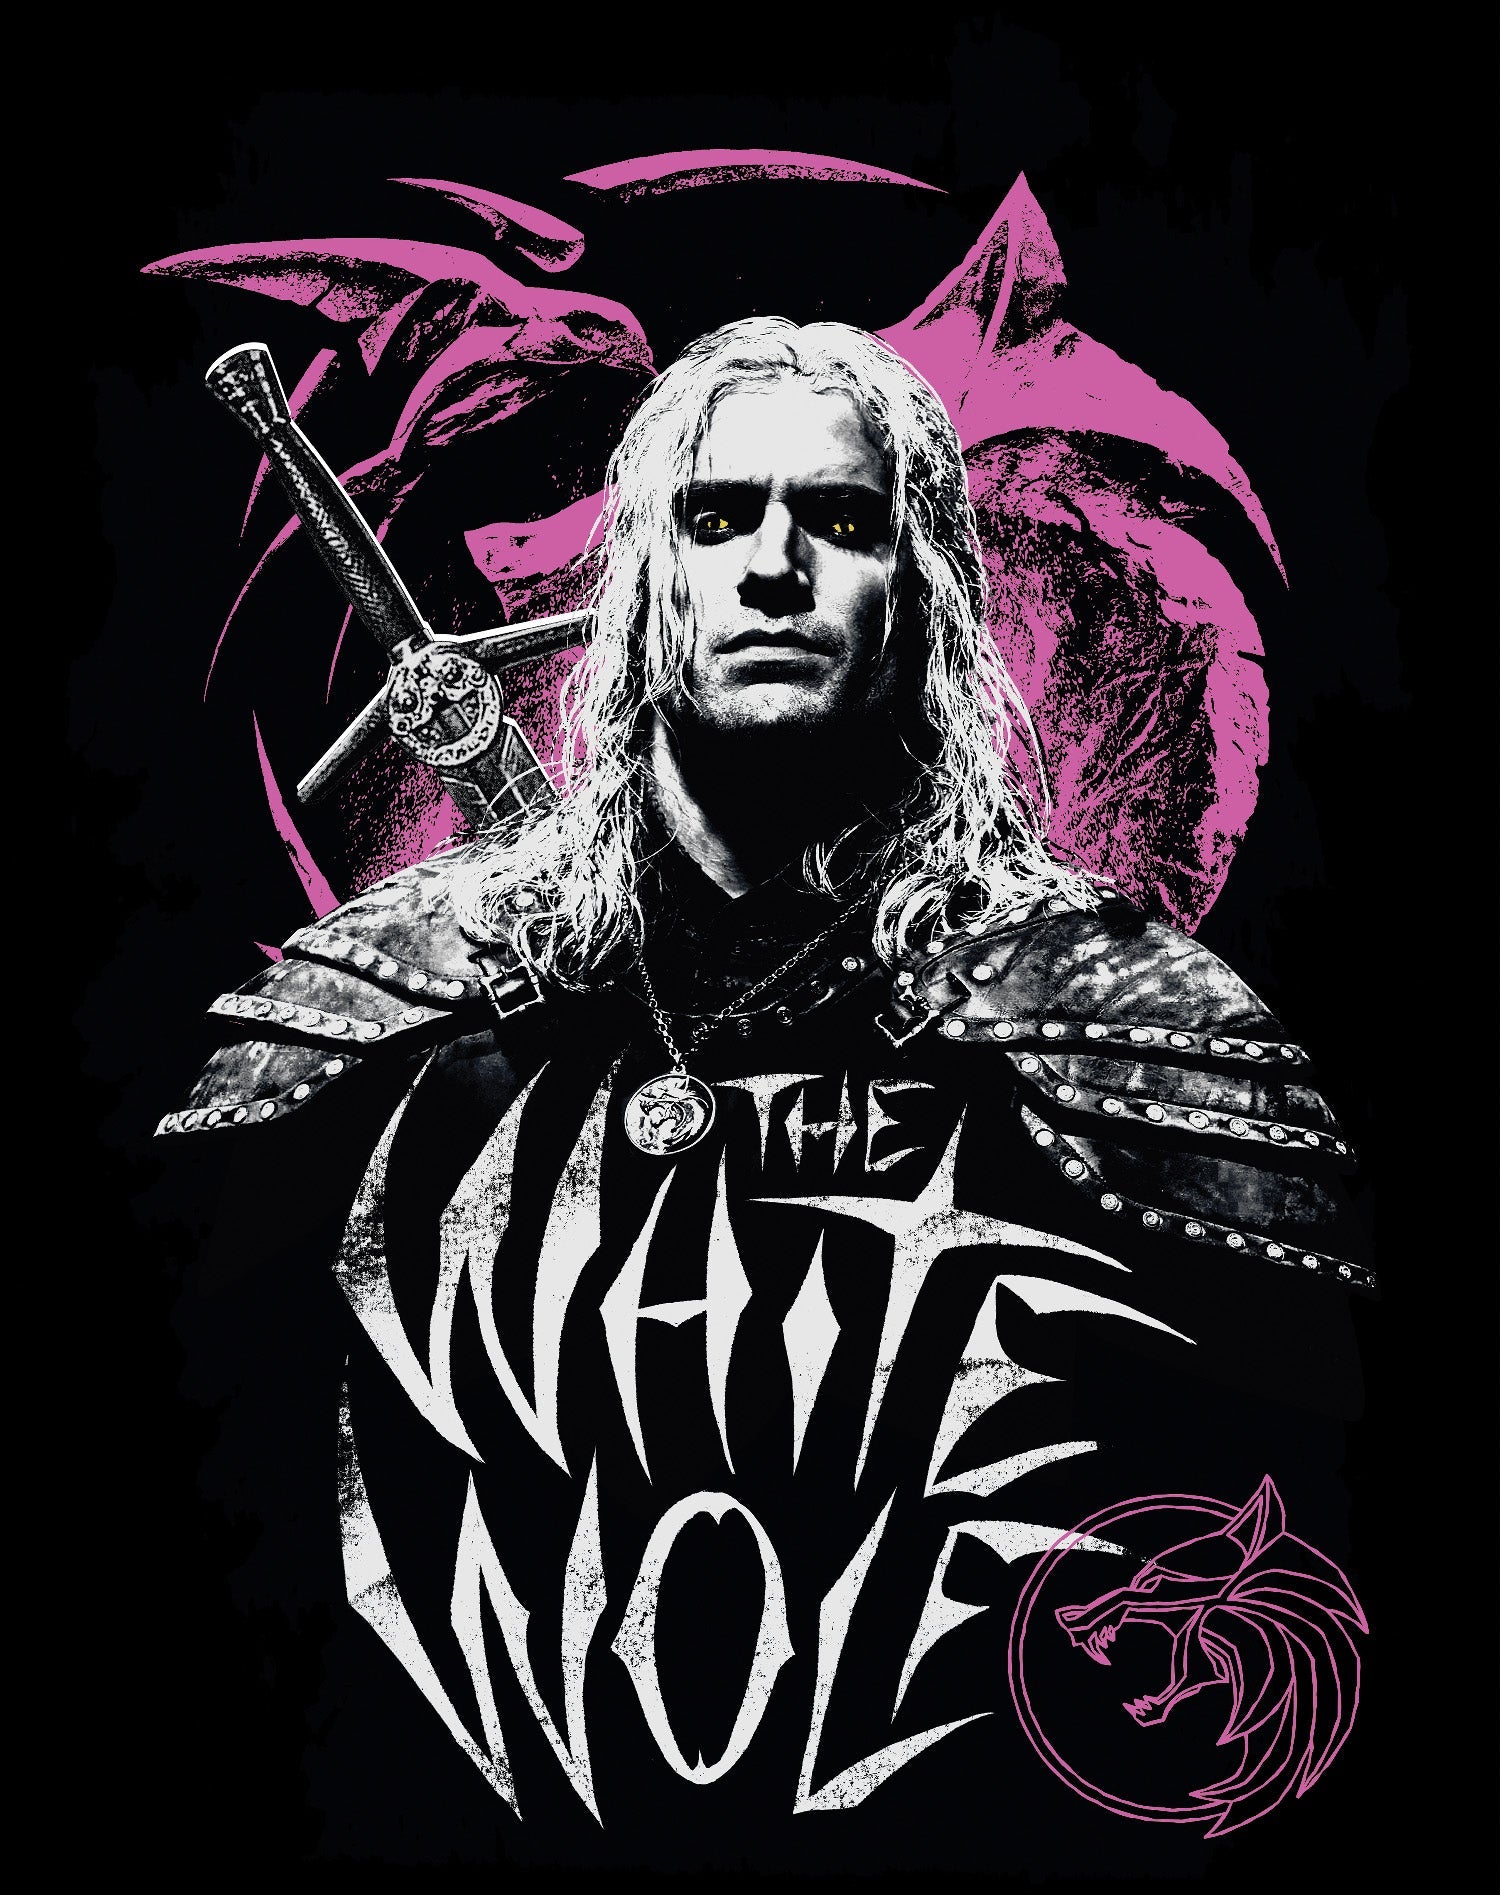 The Witcher Geralt Splash White Wolf Official Sweatshirt